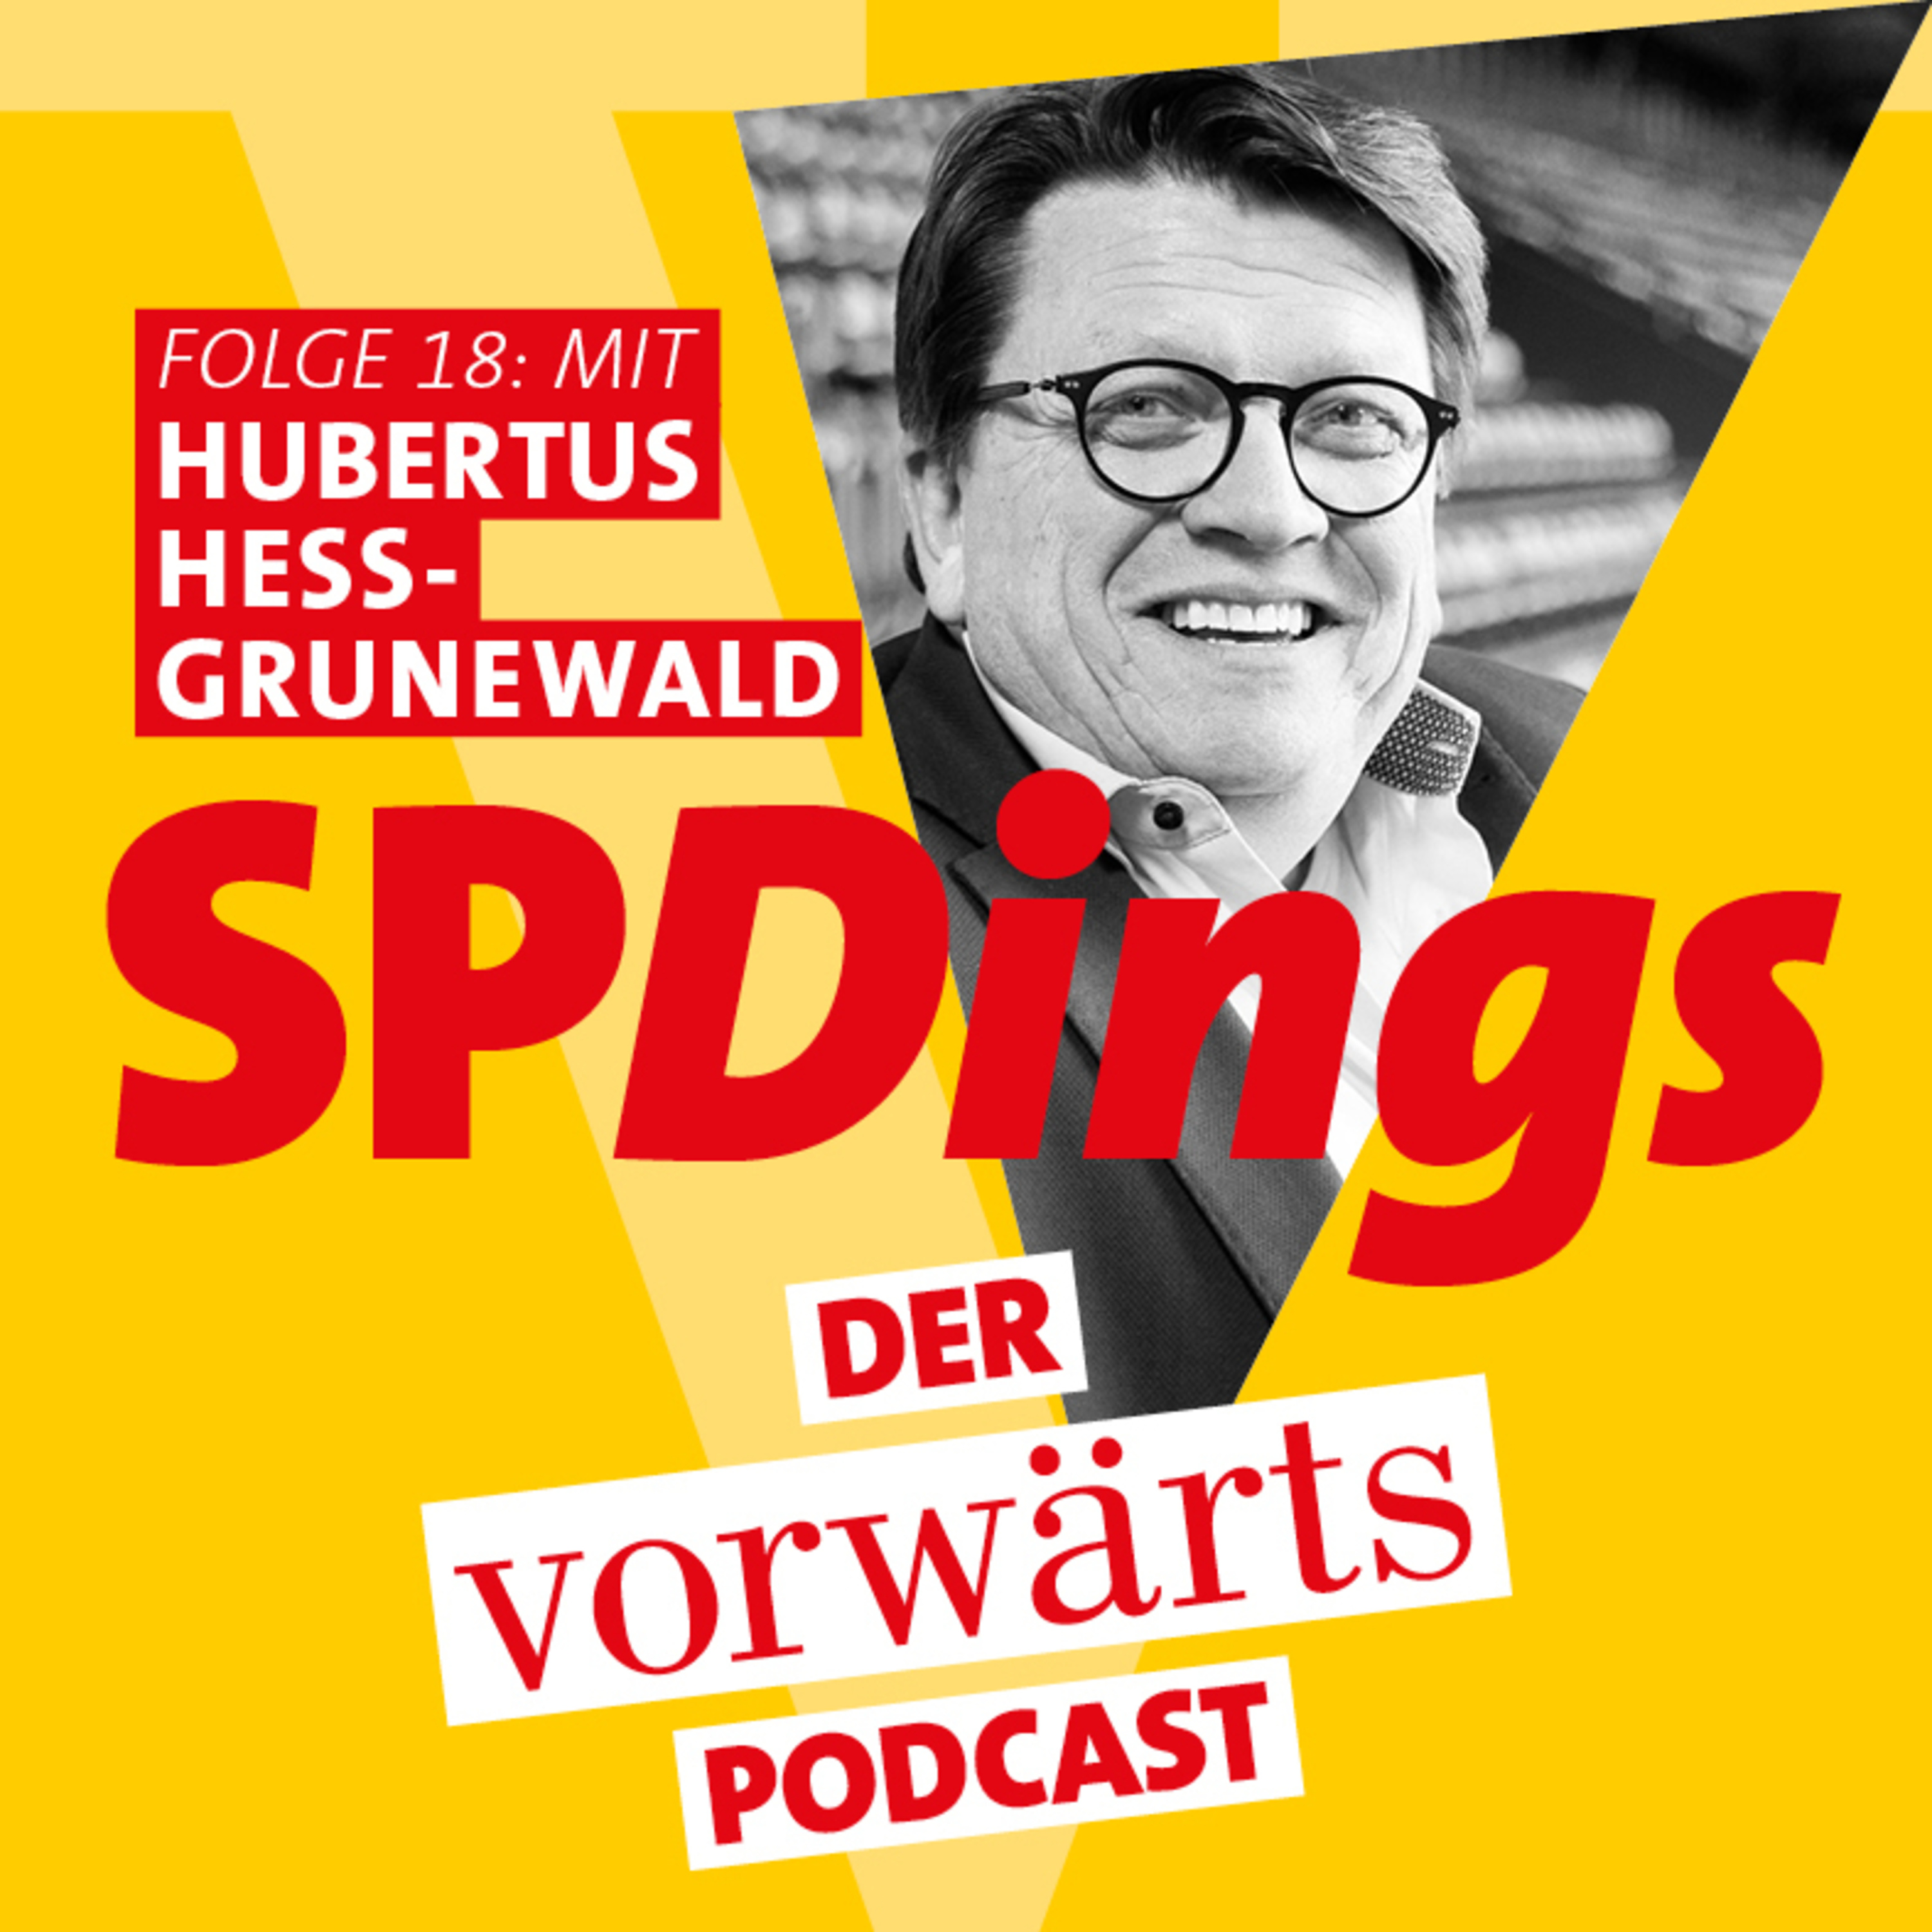 Folge 18 - mit Hubertus Hess-Grunewald